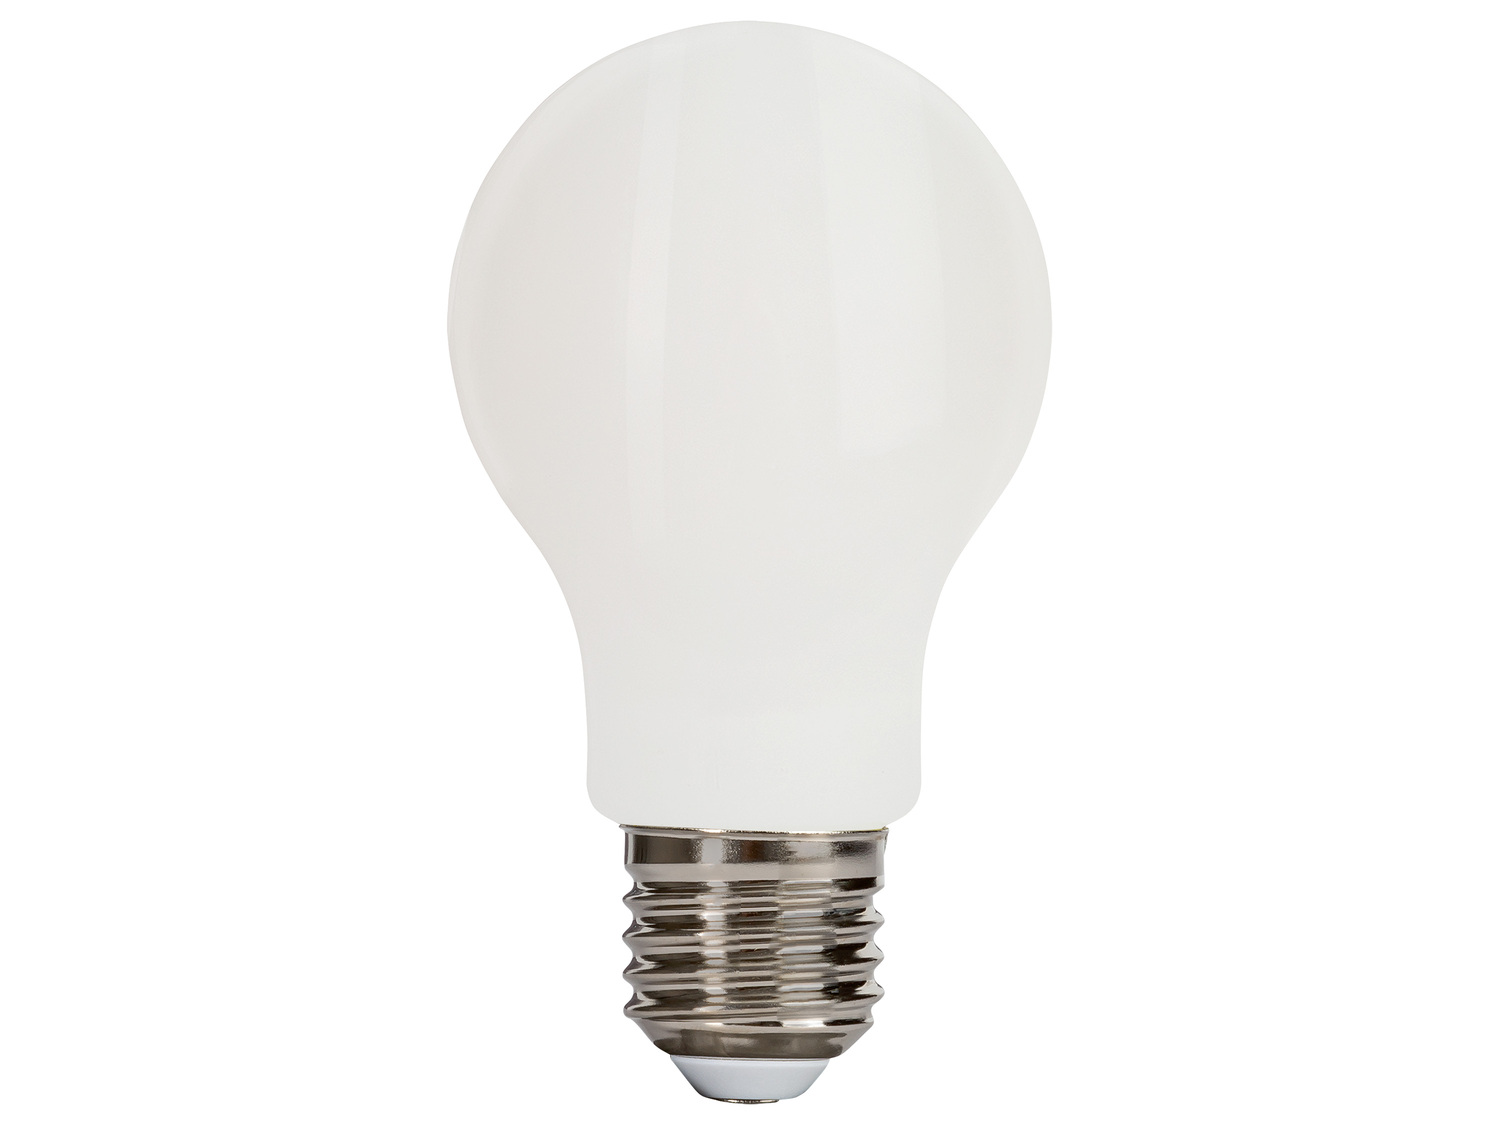 Ampoule LED à filament , le prix 1.99 € 
Au choix : 
- E14, Light 4,7 W (équivalent ...